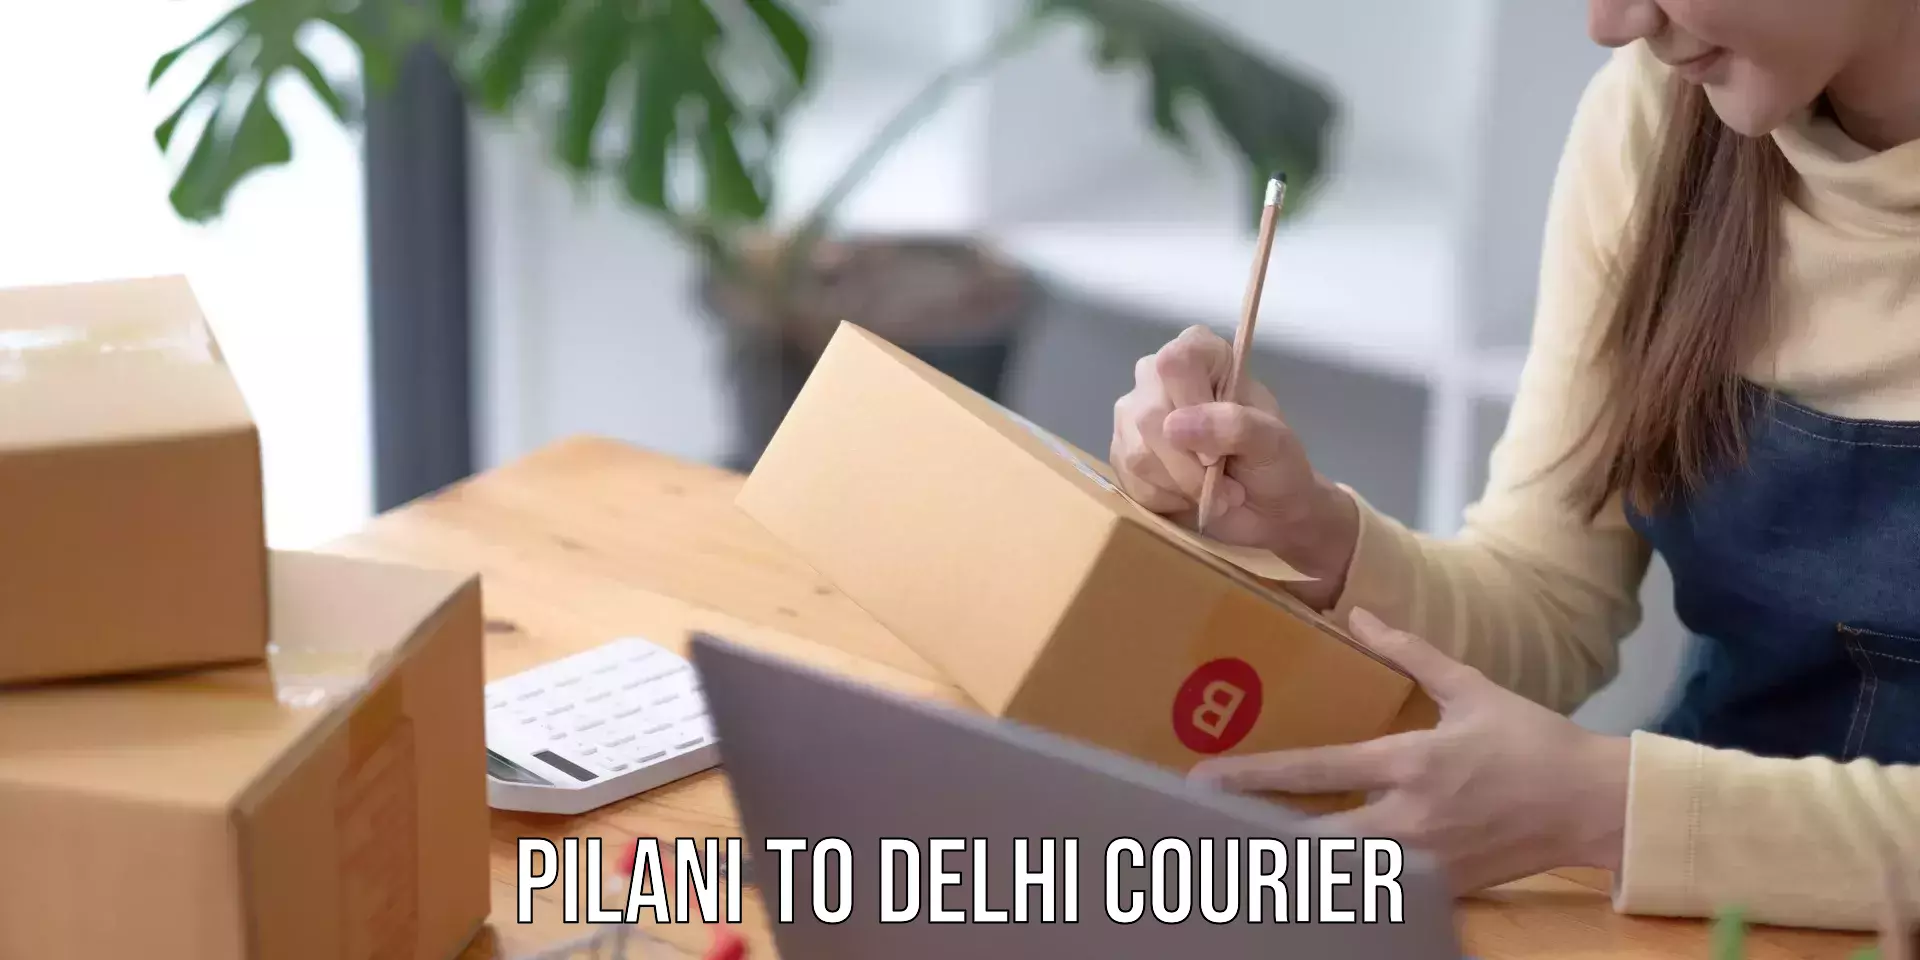 User-friendly courier app Pilani to Kalkaji